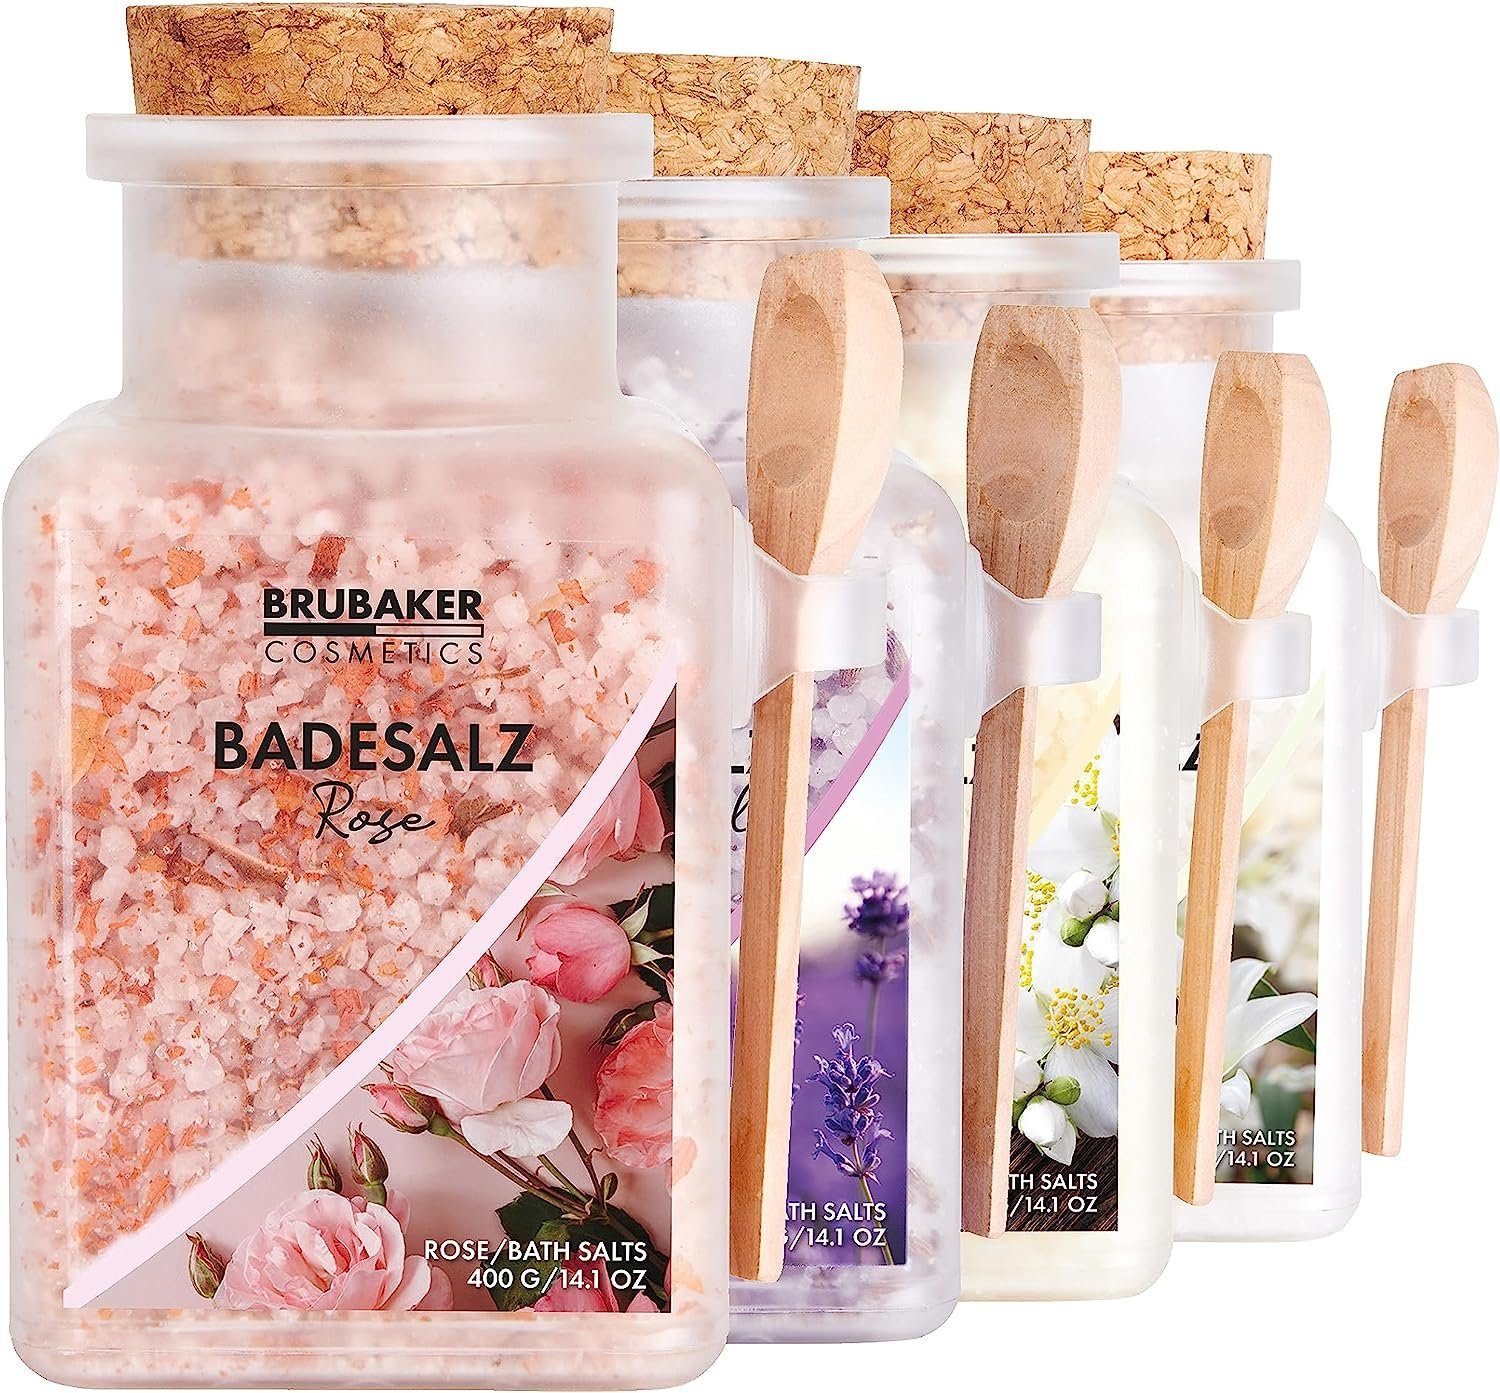 BRUBAKER Badesalz Bade Salz Set 4 x 400 g - Rosen, Lilien, Vanille und Lavendel Duft, 4-tlg., Badezusatz mit natürlichen Extrakten - Wellness Baden für Entspannung | Badezusätze